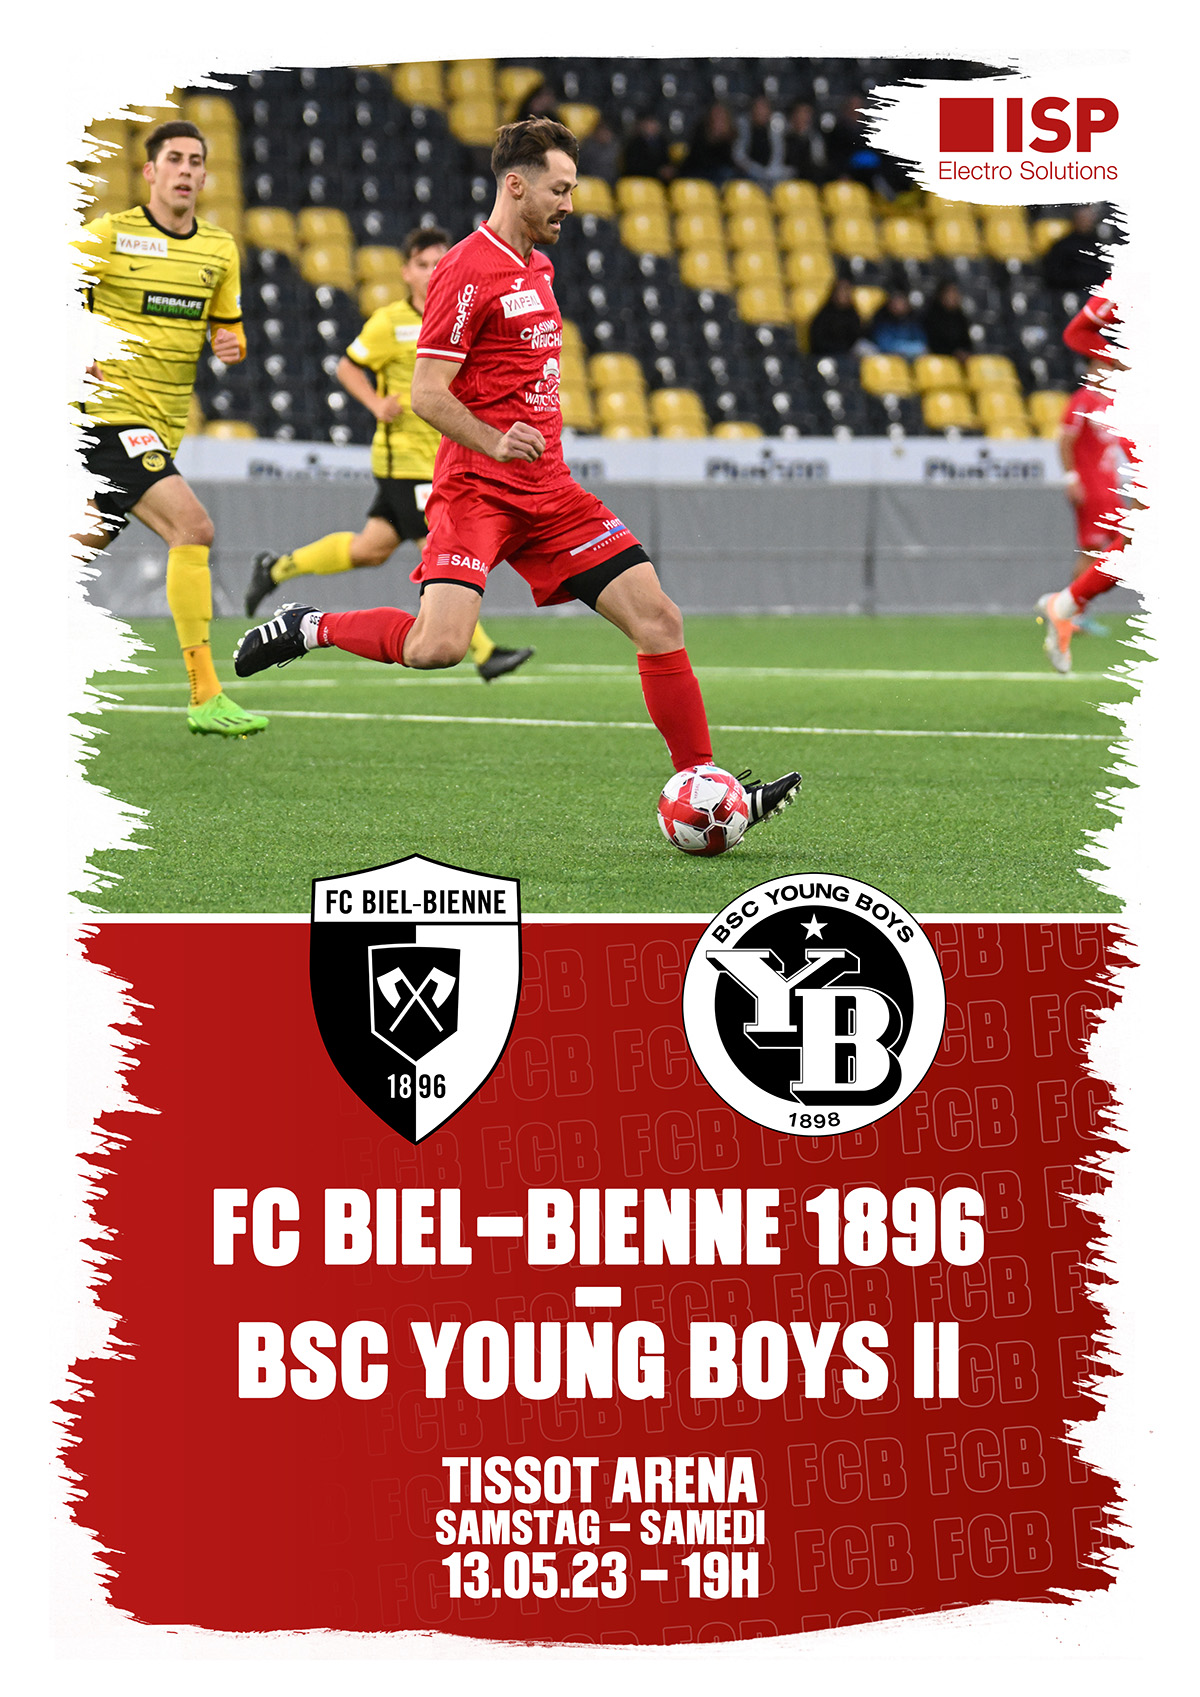 Cordiale bienvenue aux espoirs du BSC Young Boys Berne et à tous ses supporters et supportrices